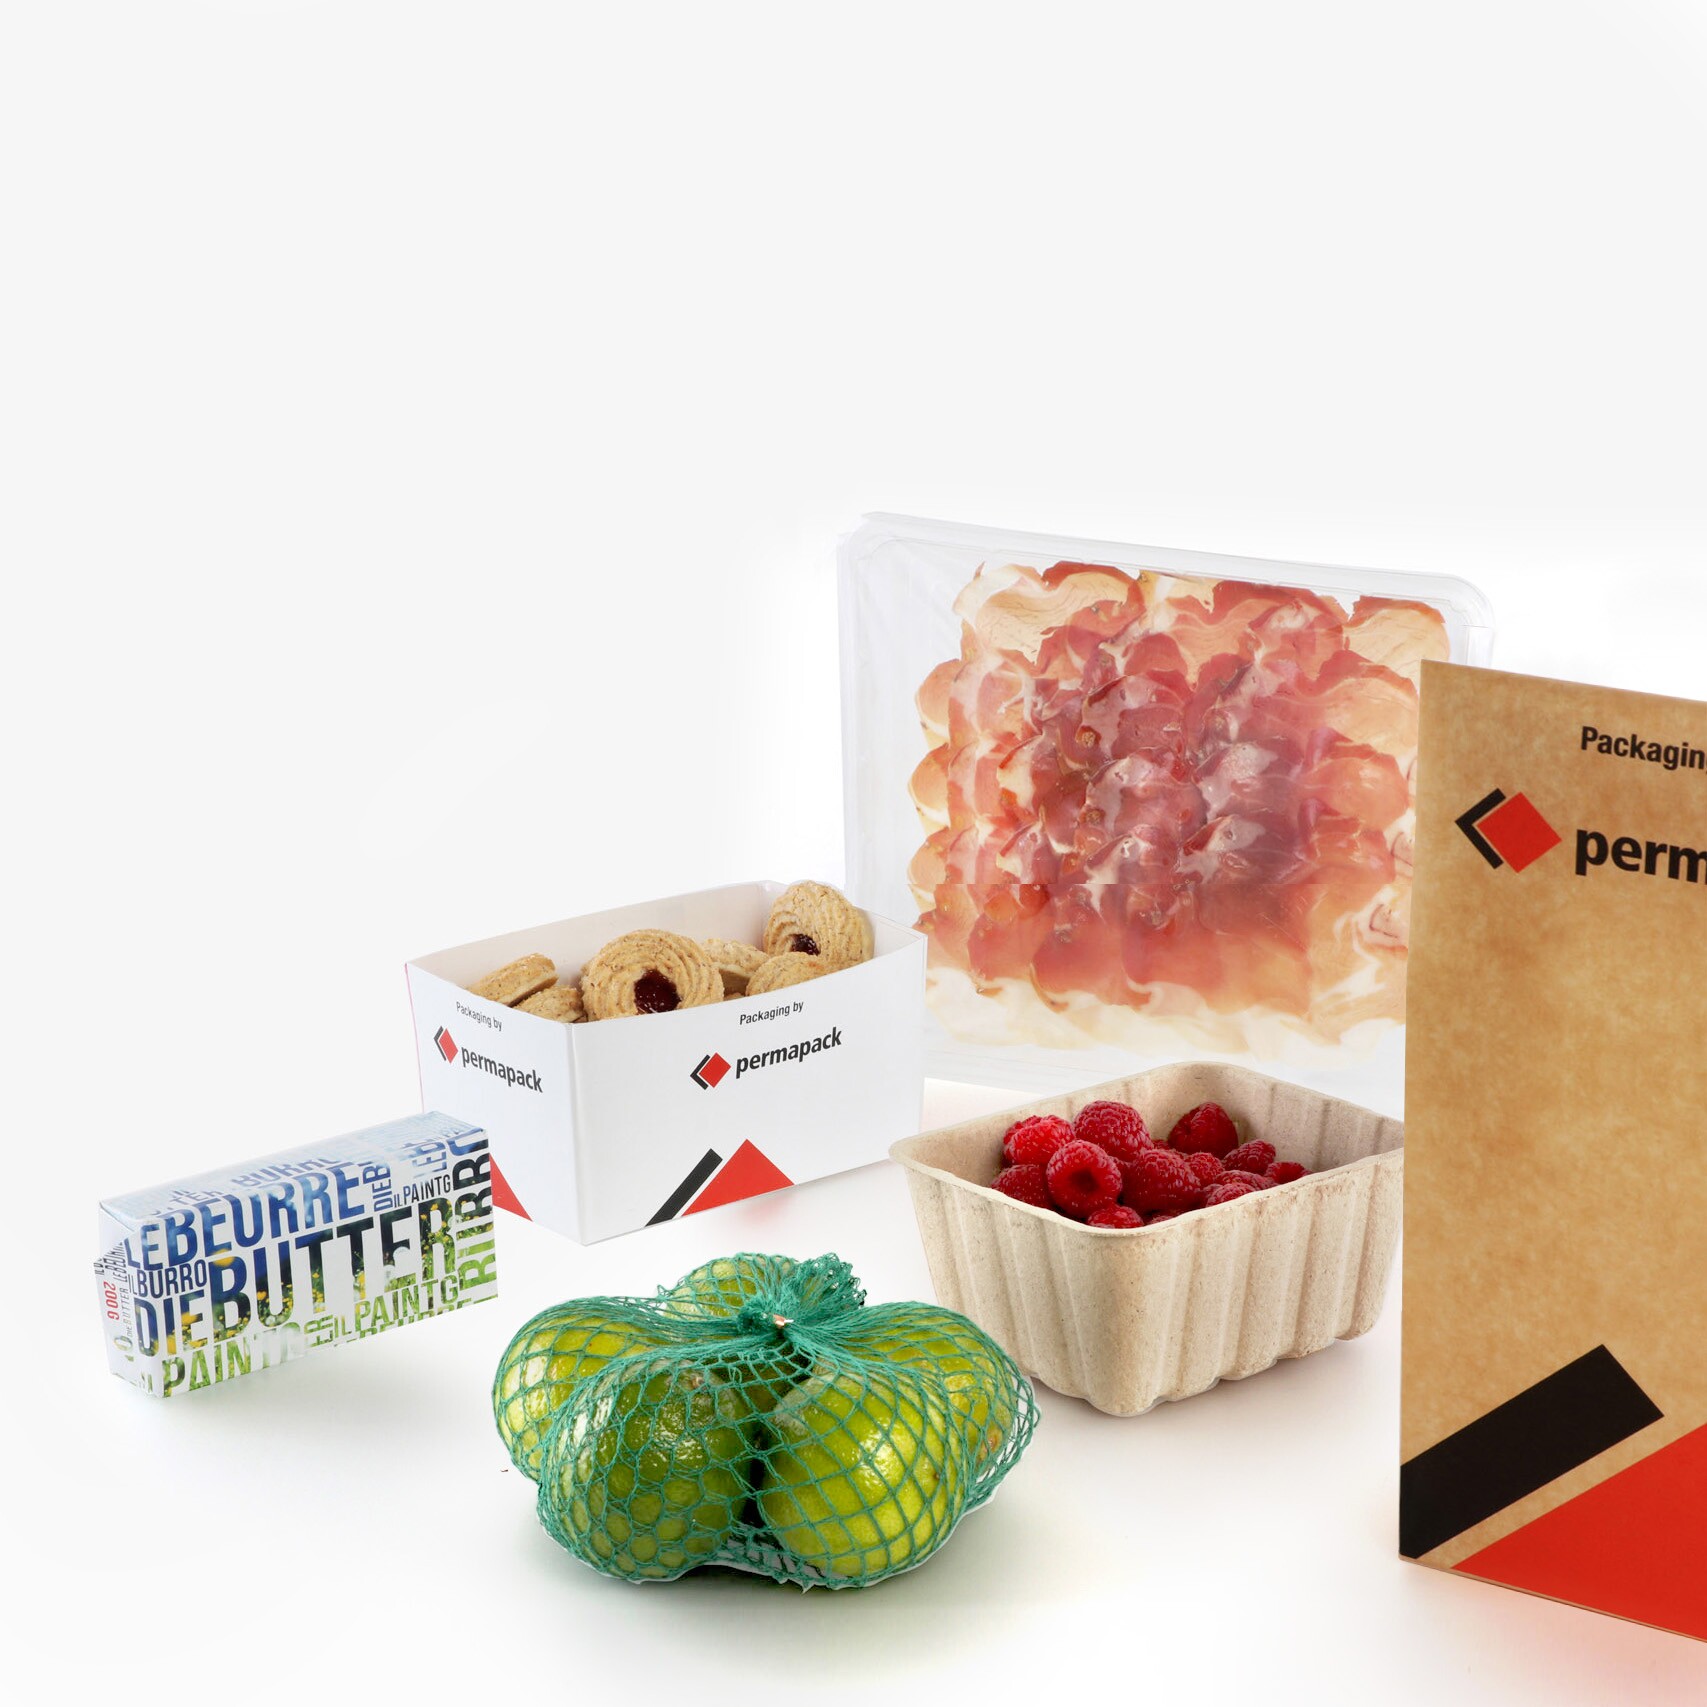 Différents produits alimentaires dans des emballages souples tels que le film d'emballage pour le beurre, le filet d'emballage, les barquettes en carton, les films multicouches et les sacs en papier.